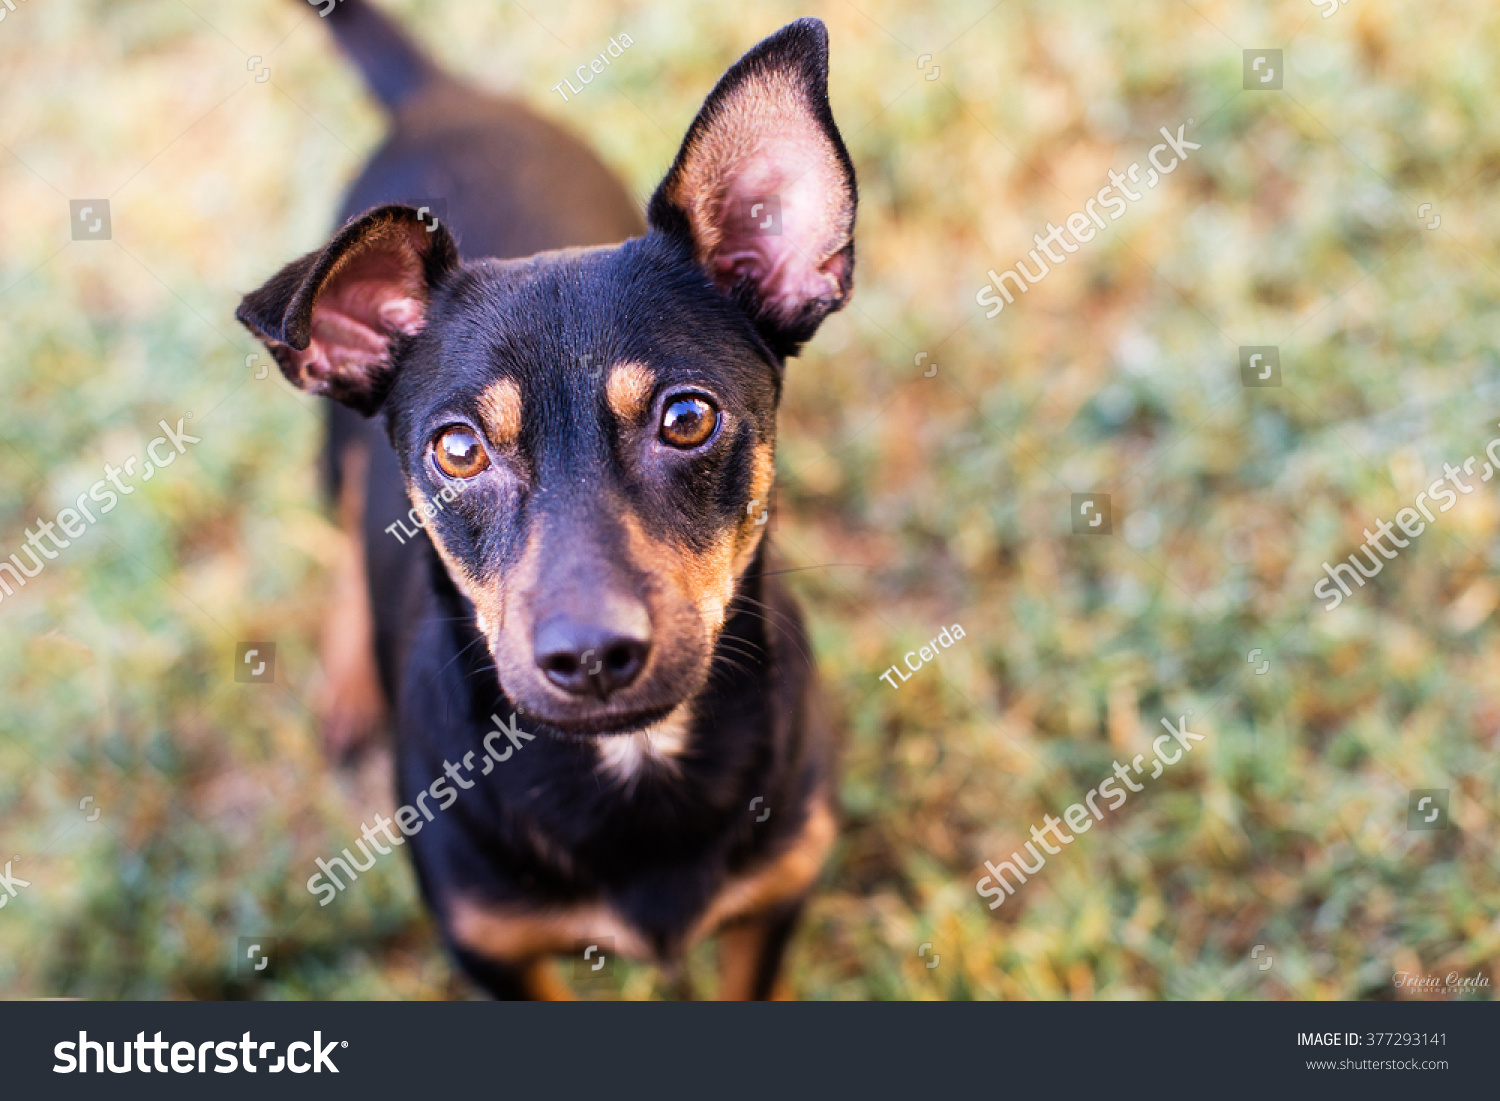 Chihuahua Mix Dog Floppy Ears Animals Wildlife Stock Image 377293141